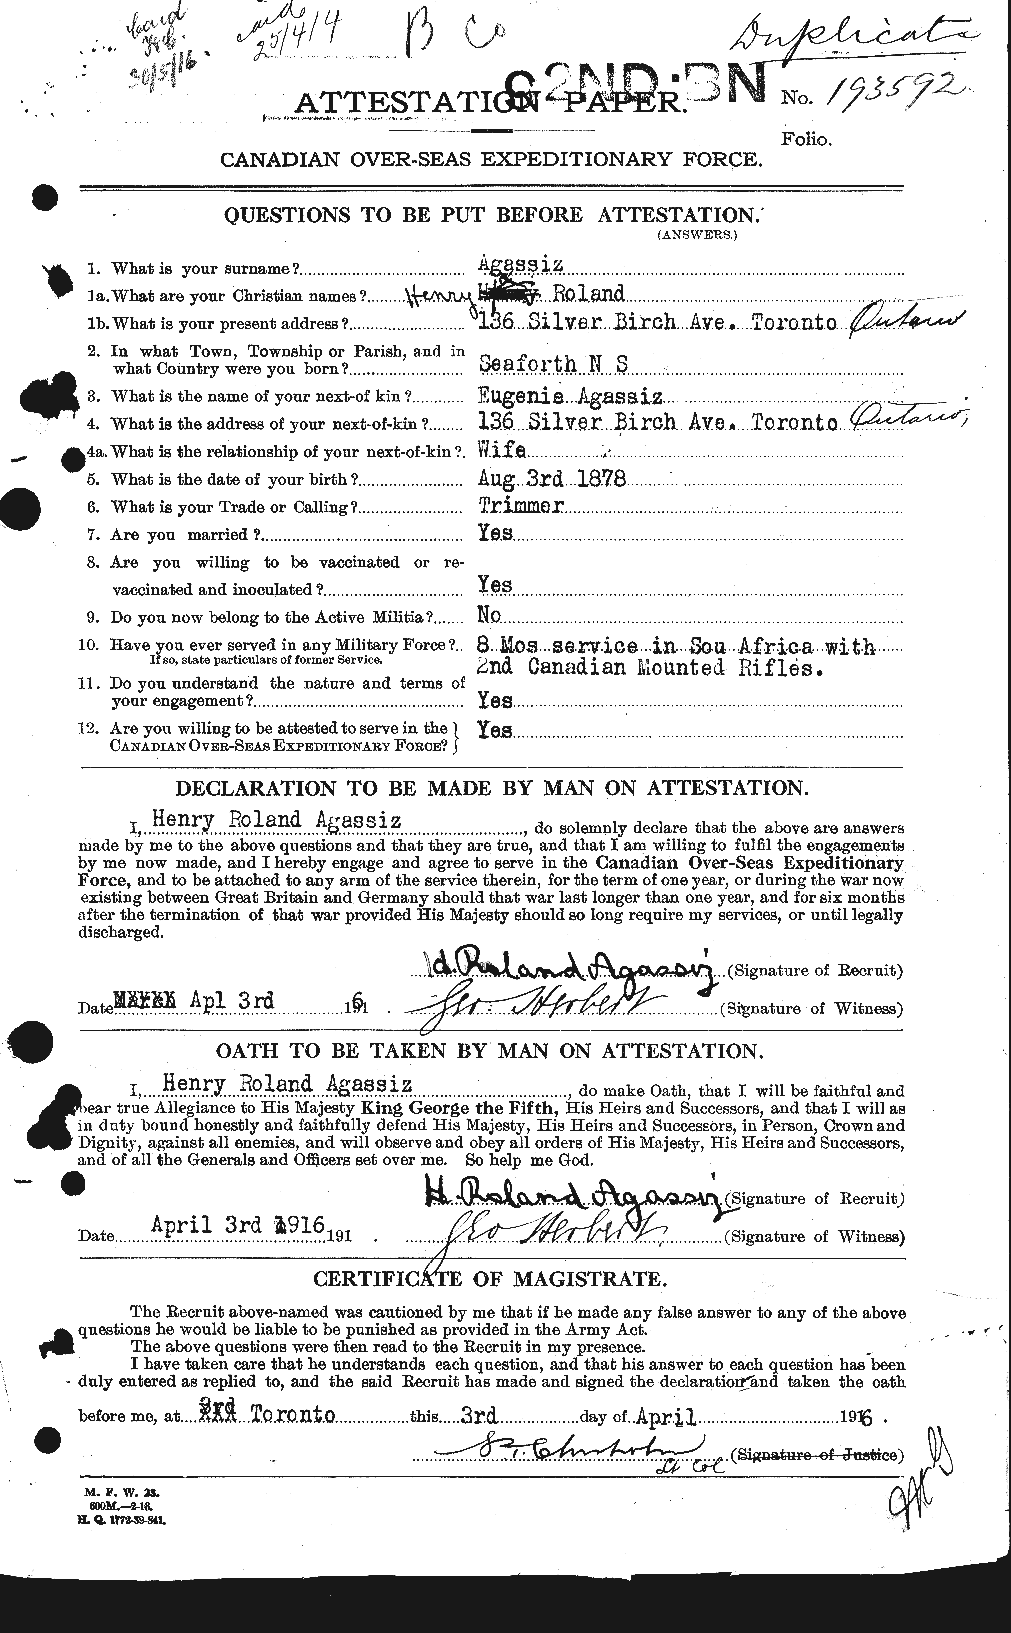 Dossiers du Personnel de la Première Guerre mondiale - CEC 203698a